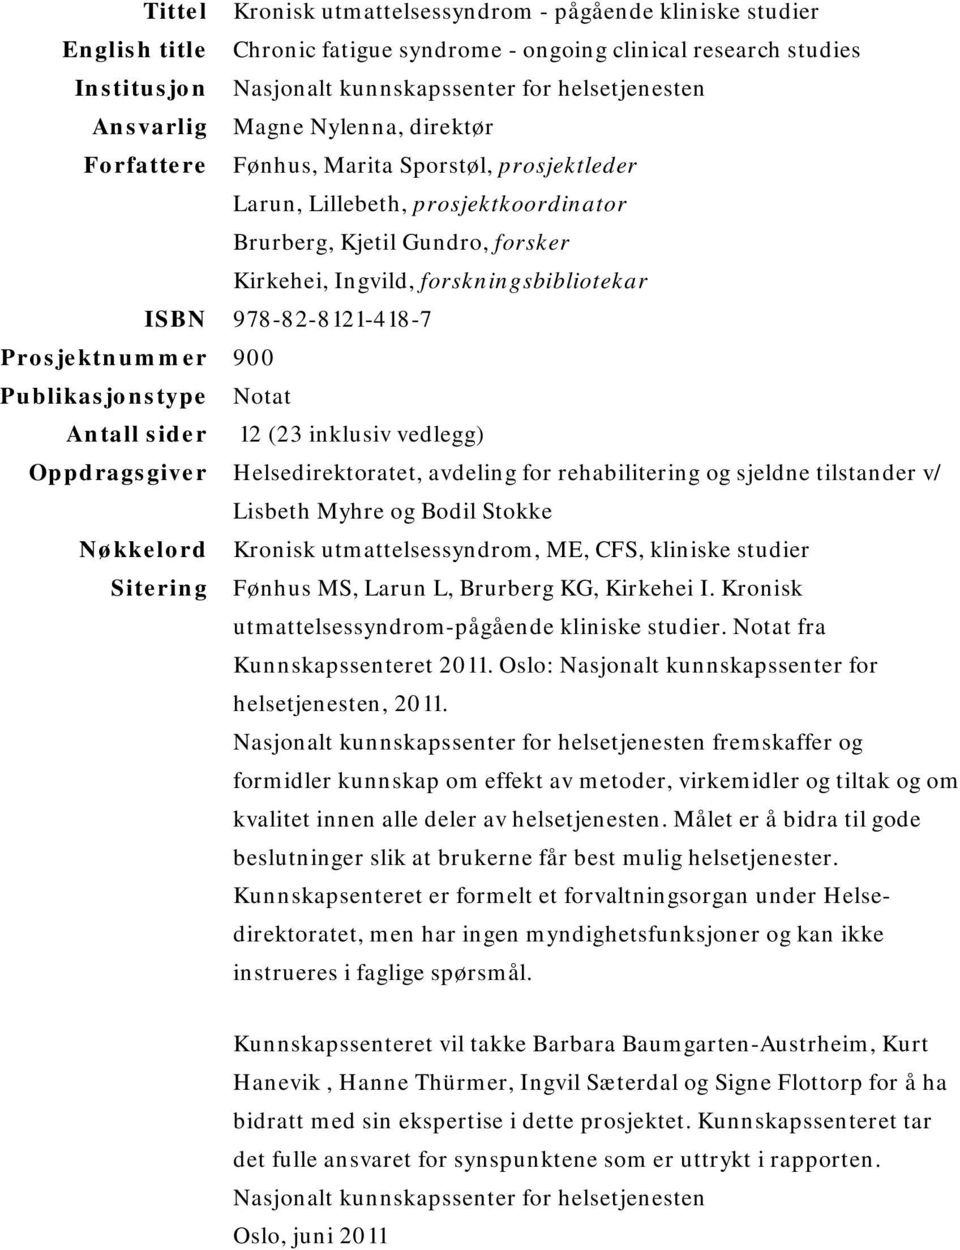 ISBN 978-82-8121-418-7 Prosjektnummer 900 Publikasjonstype Notat Antall sider 12 (23 inklusiv vedlegg) Oppdragsgiver Helsedirektoratet, avdeling for rehabilitering og sjeldne tilstander v/ Lisbeth